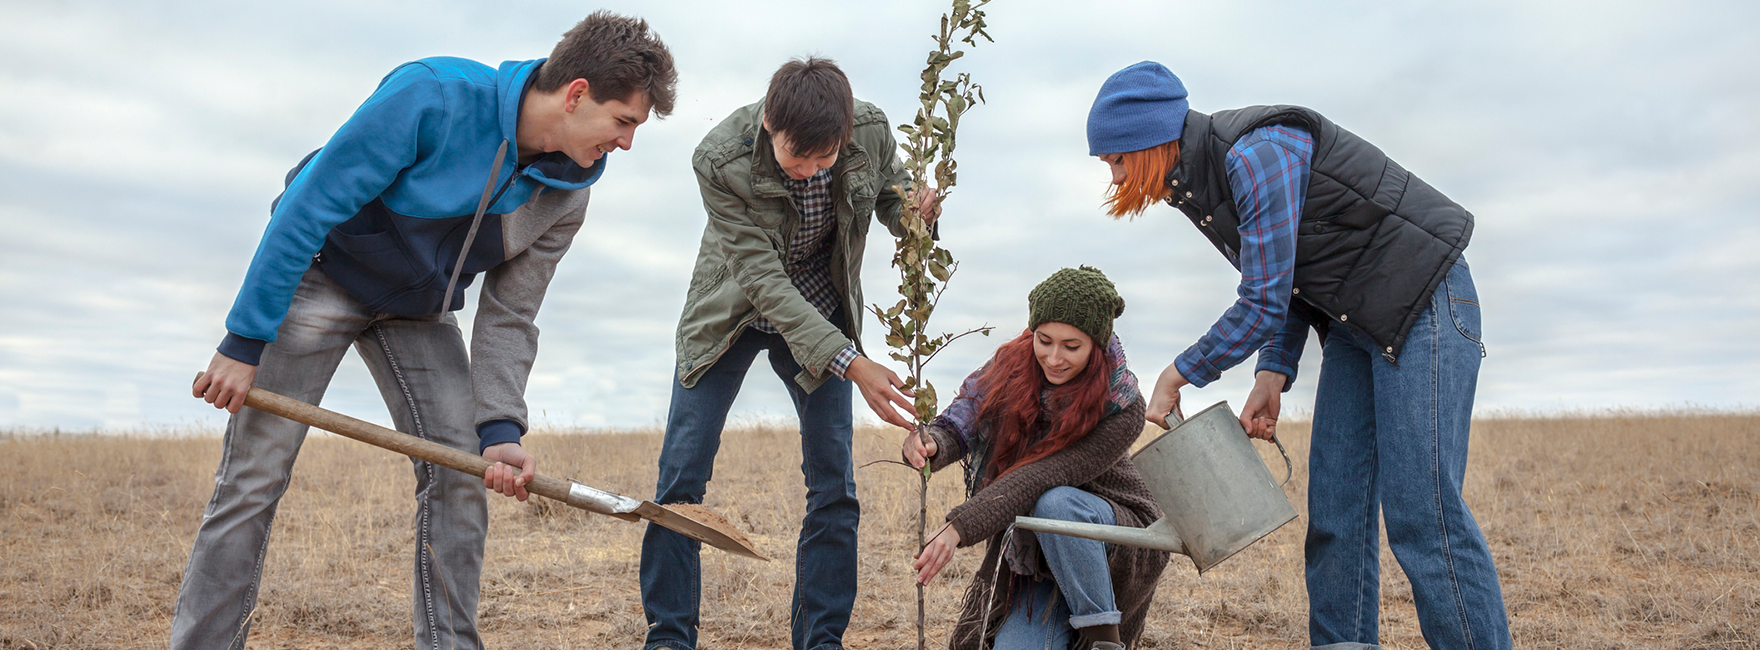 Vier junge Menschen pflanzen einen Baum auf einem sonst trockenen Feld. 